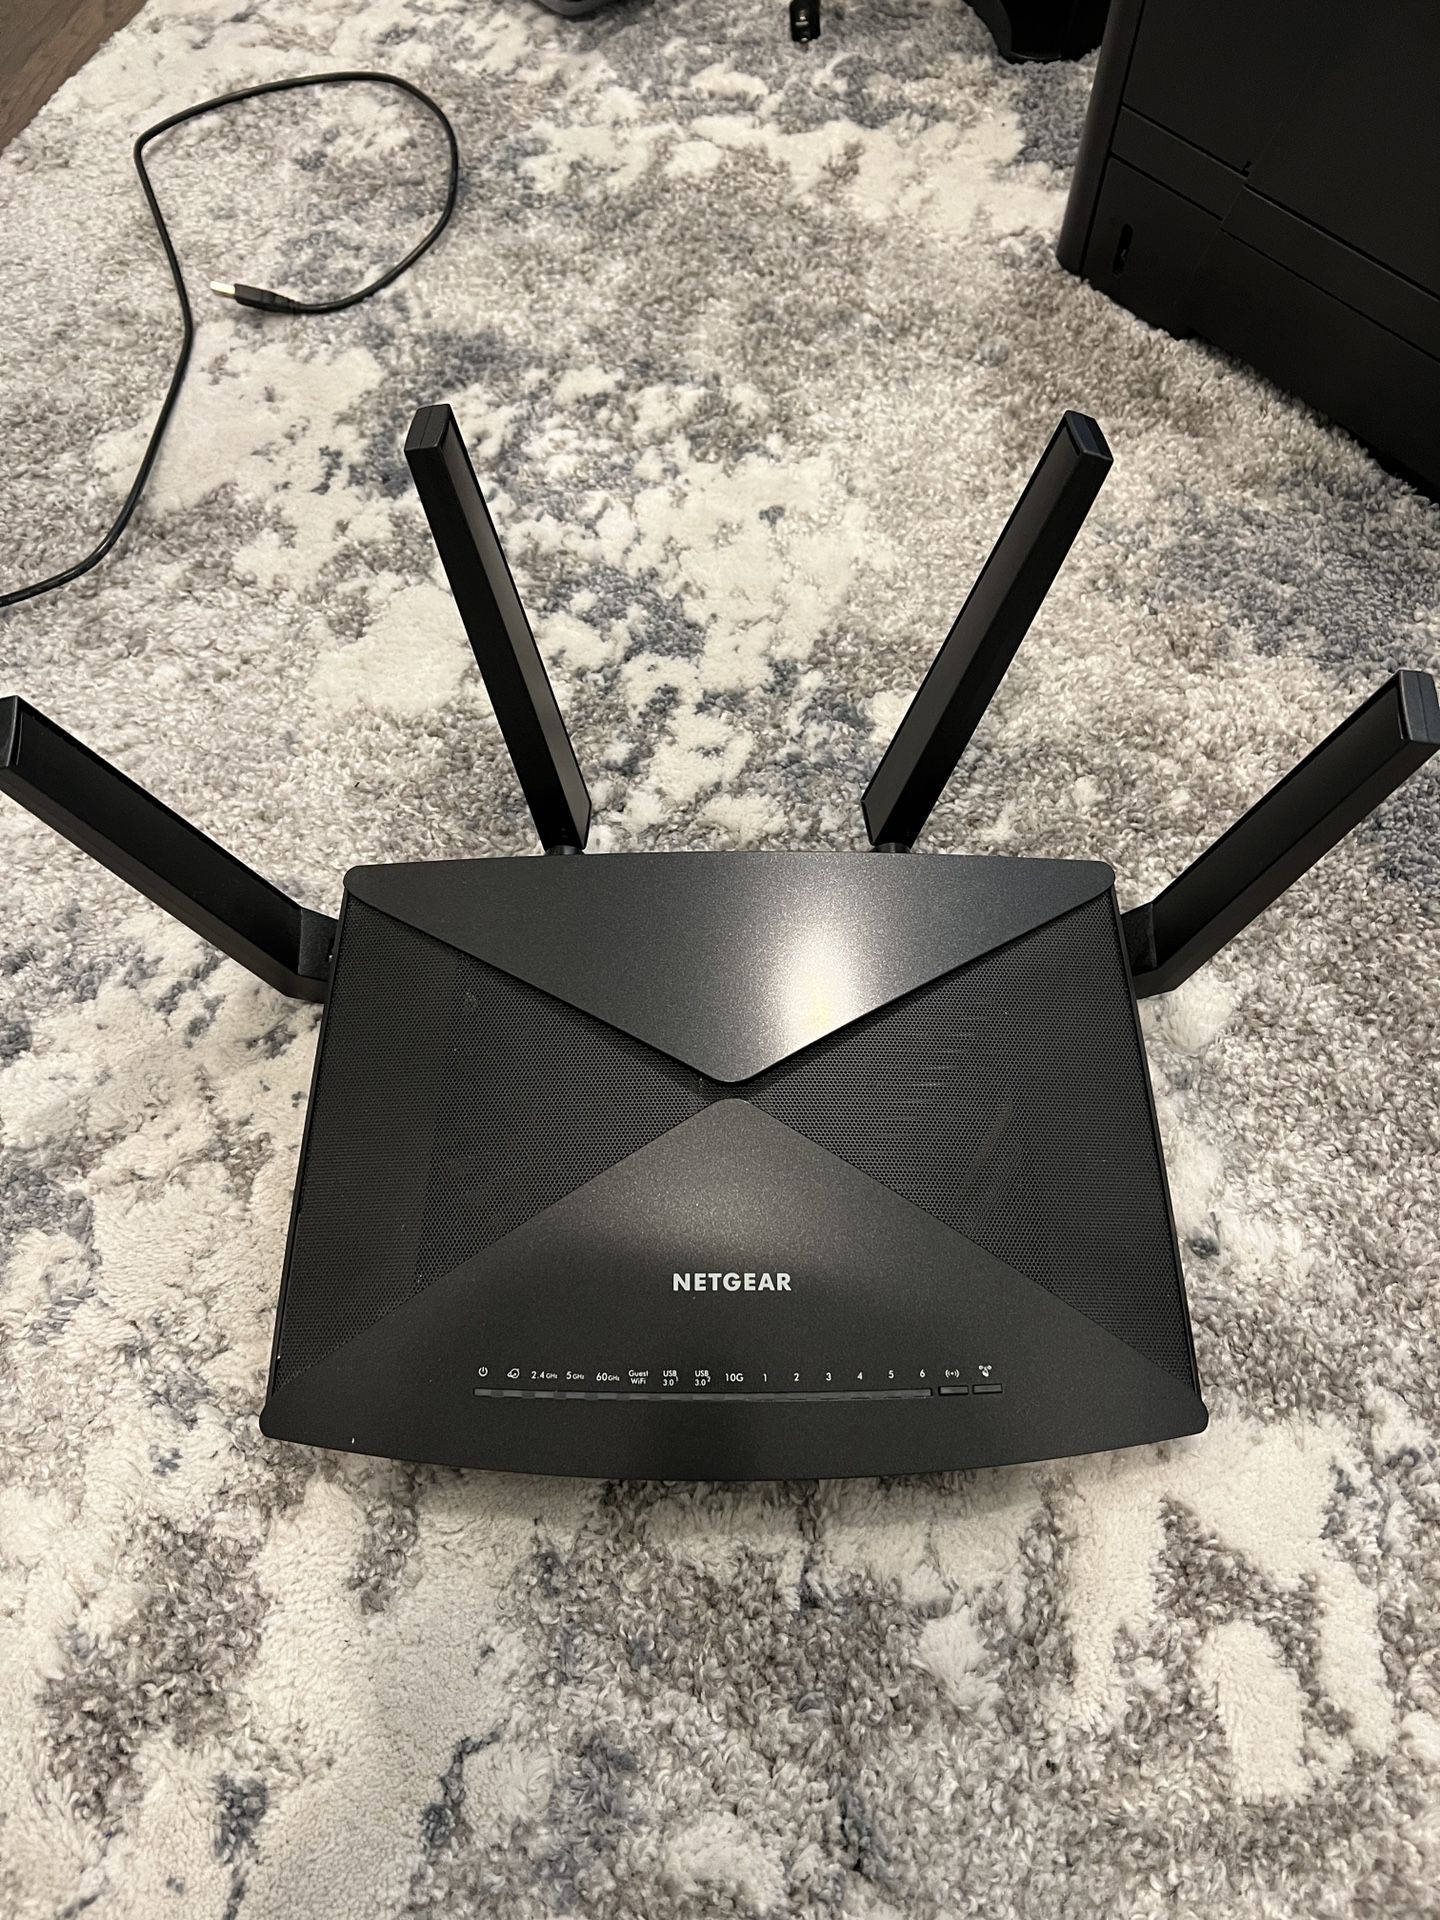 Netgear nighthawk X10 Wifi Router